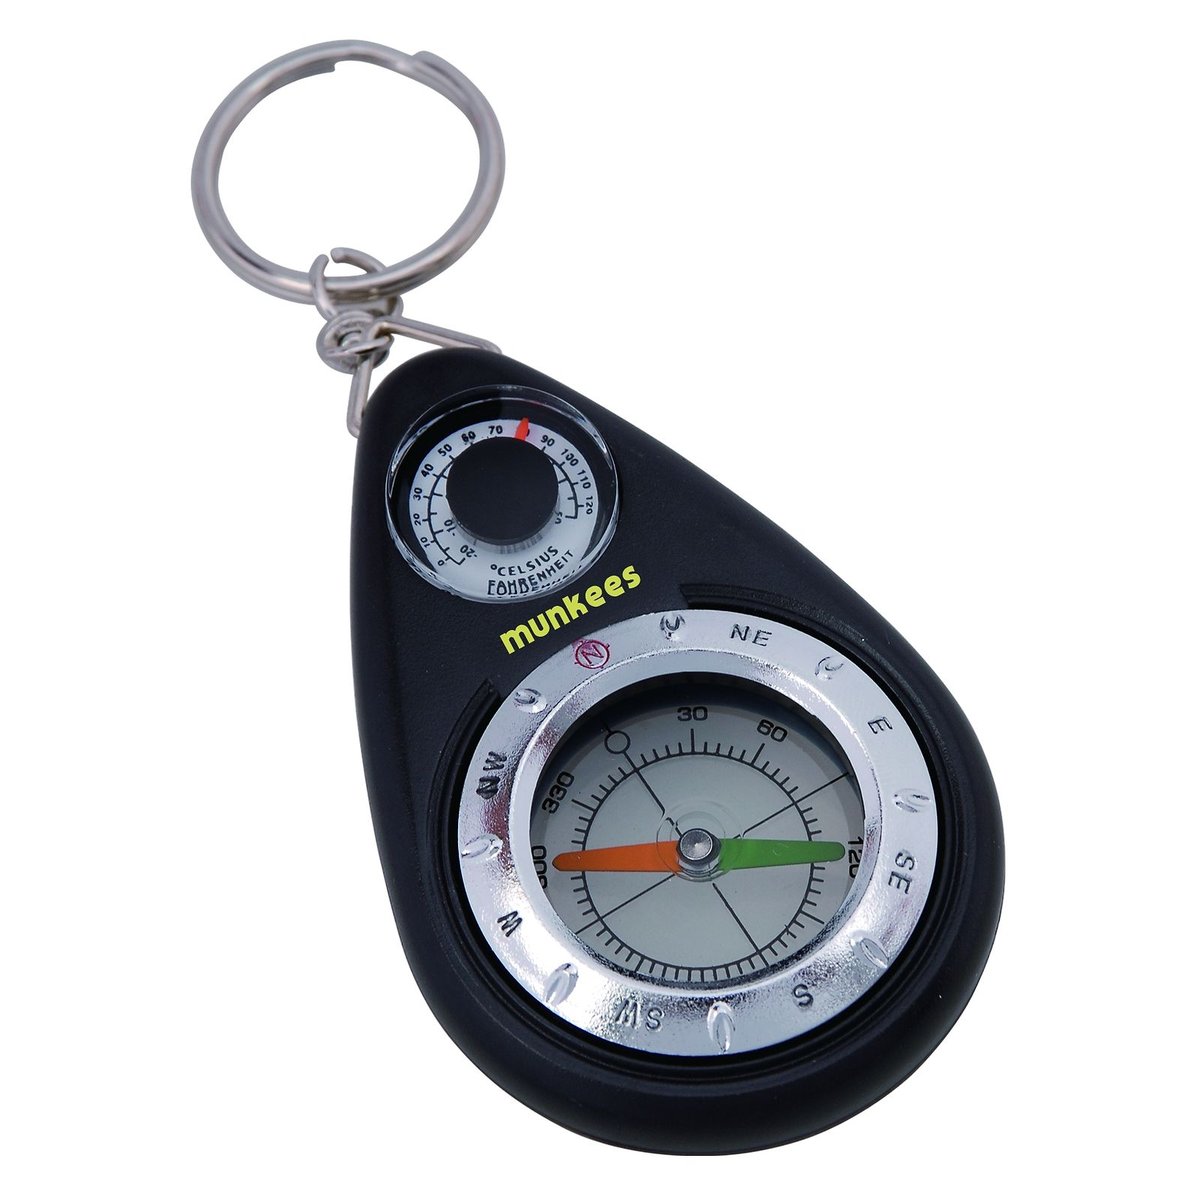 munkees termometr kompas  breloczek do kluczy, w rozmiarze uniwersalnym 3154